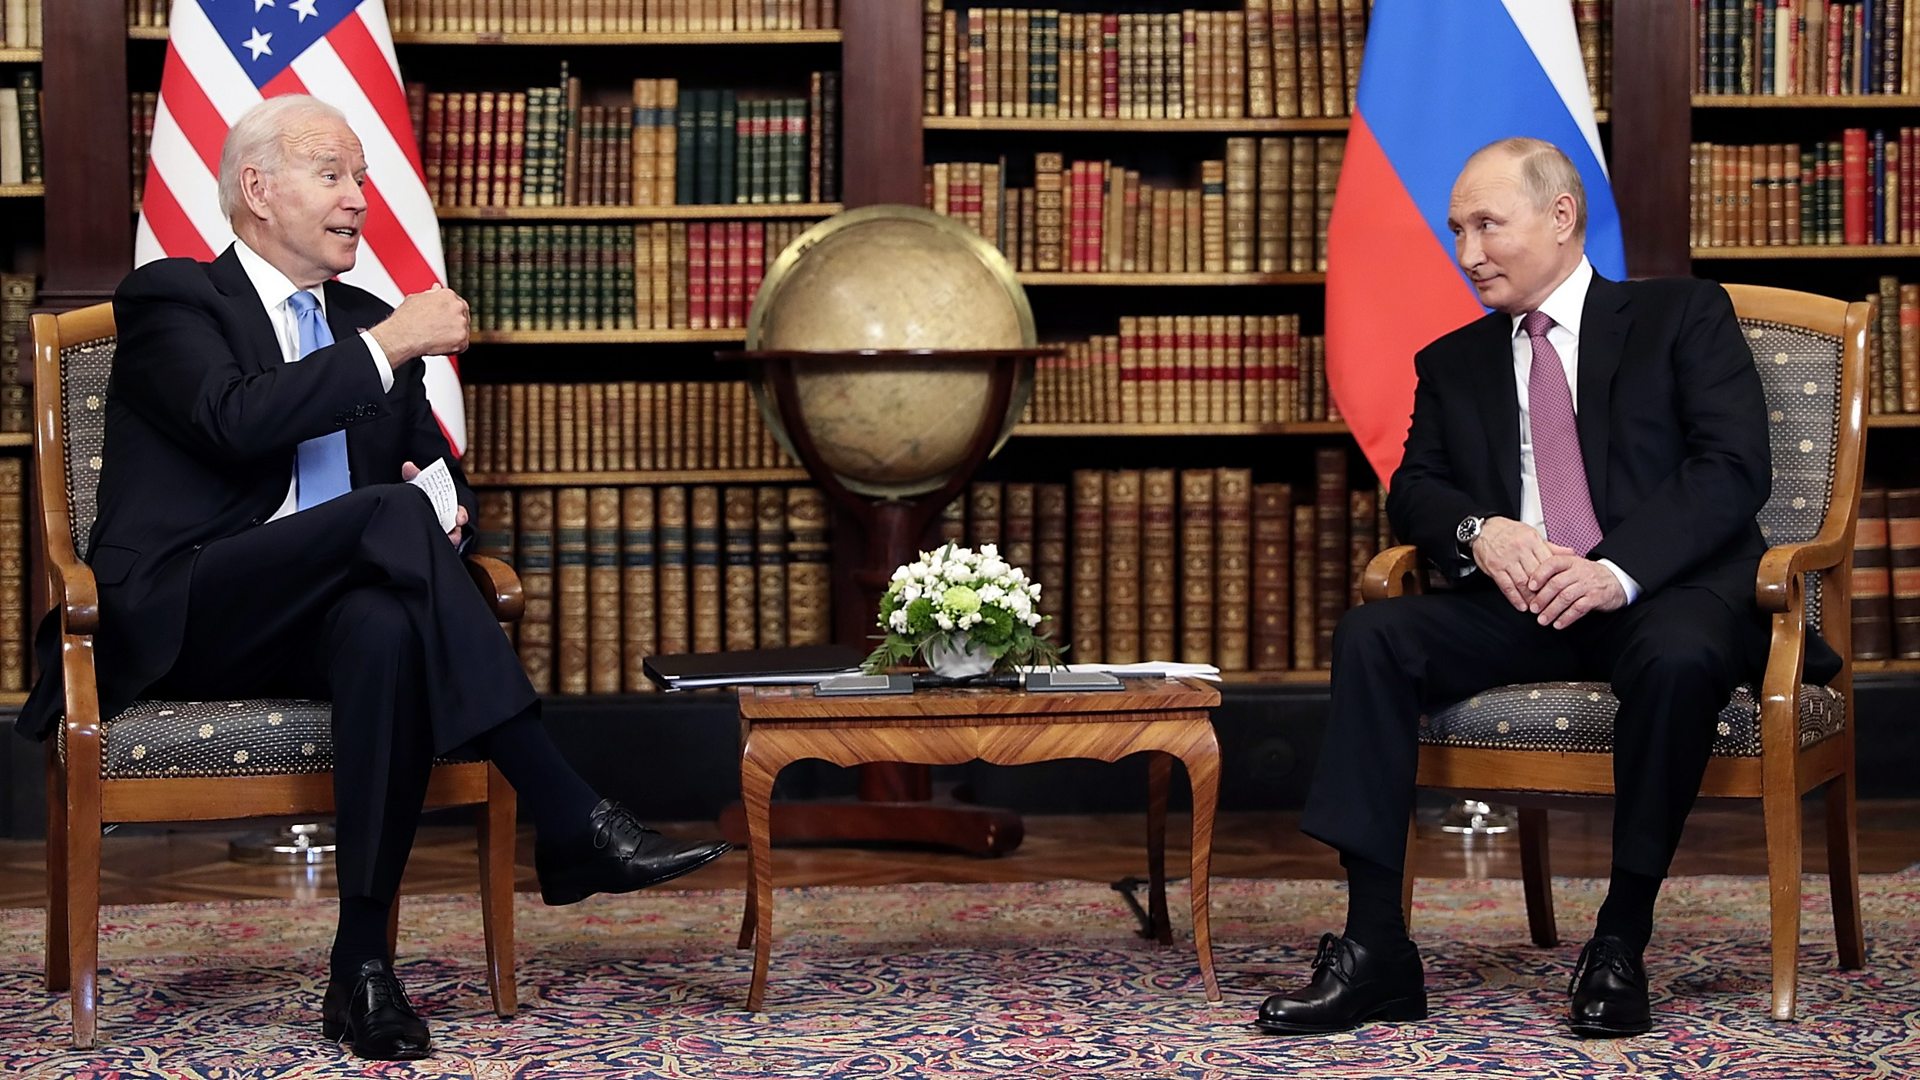 Biden-Putin summit: Presidents meet face-to-face